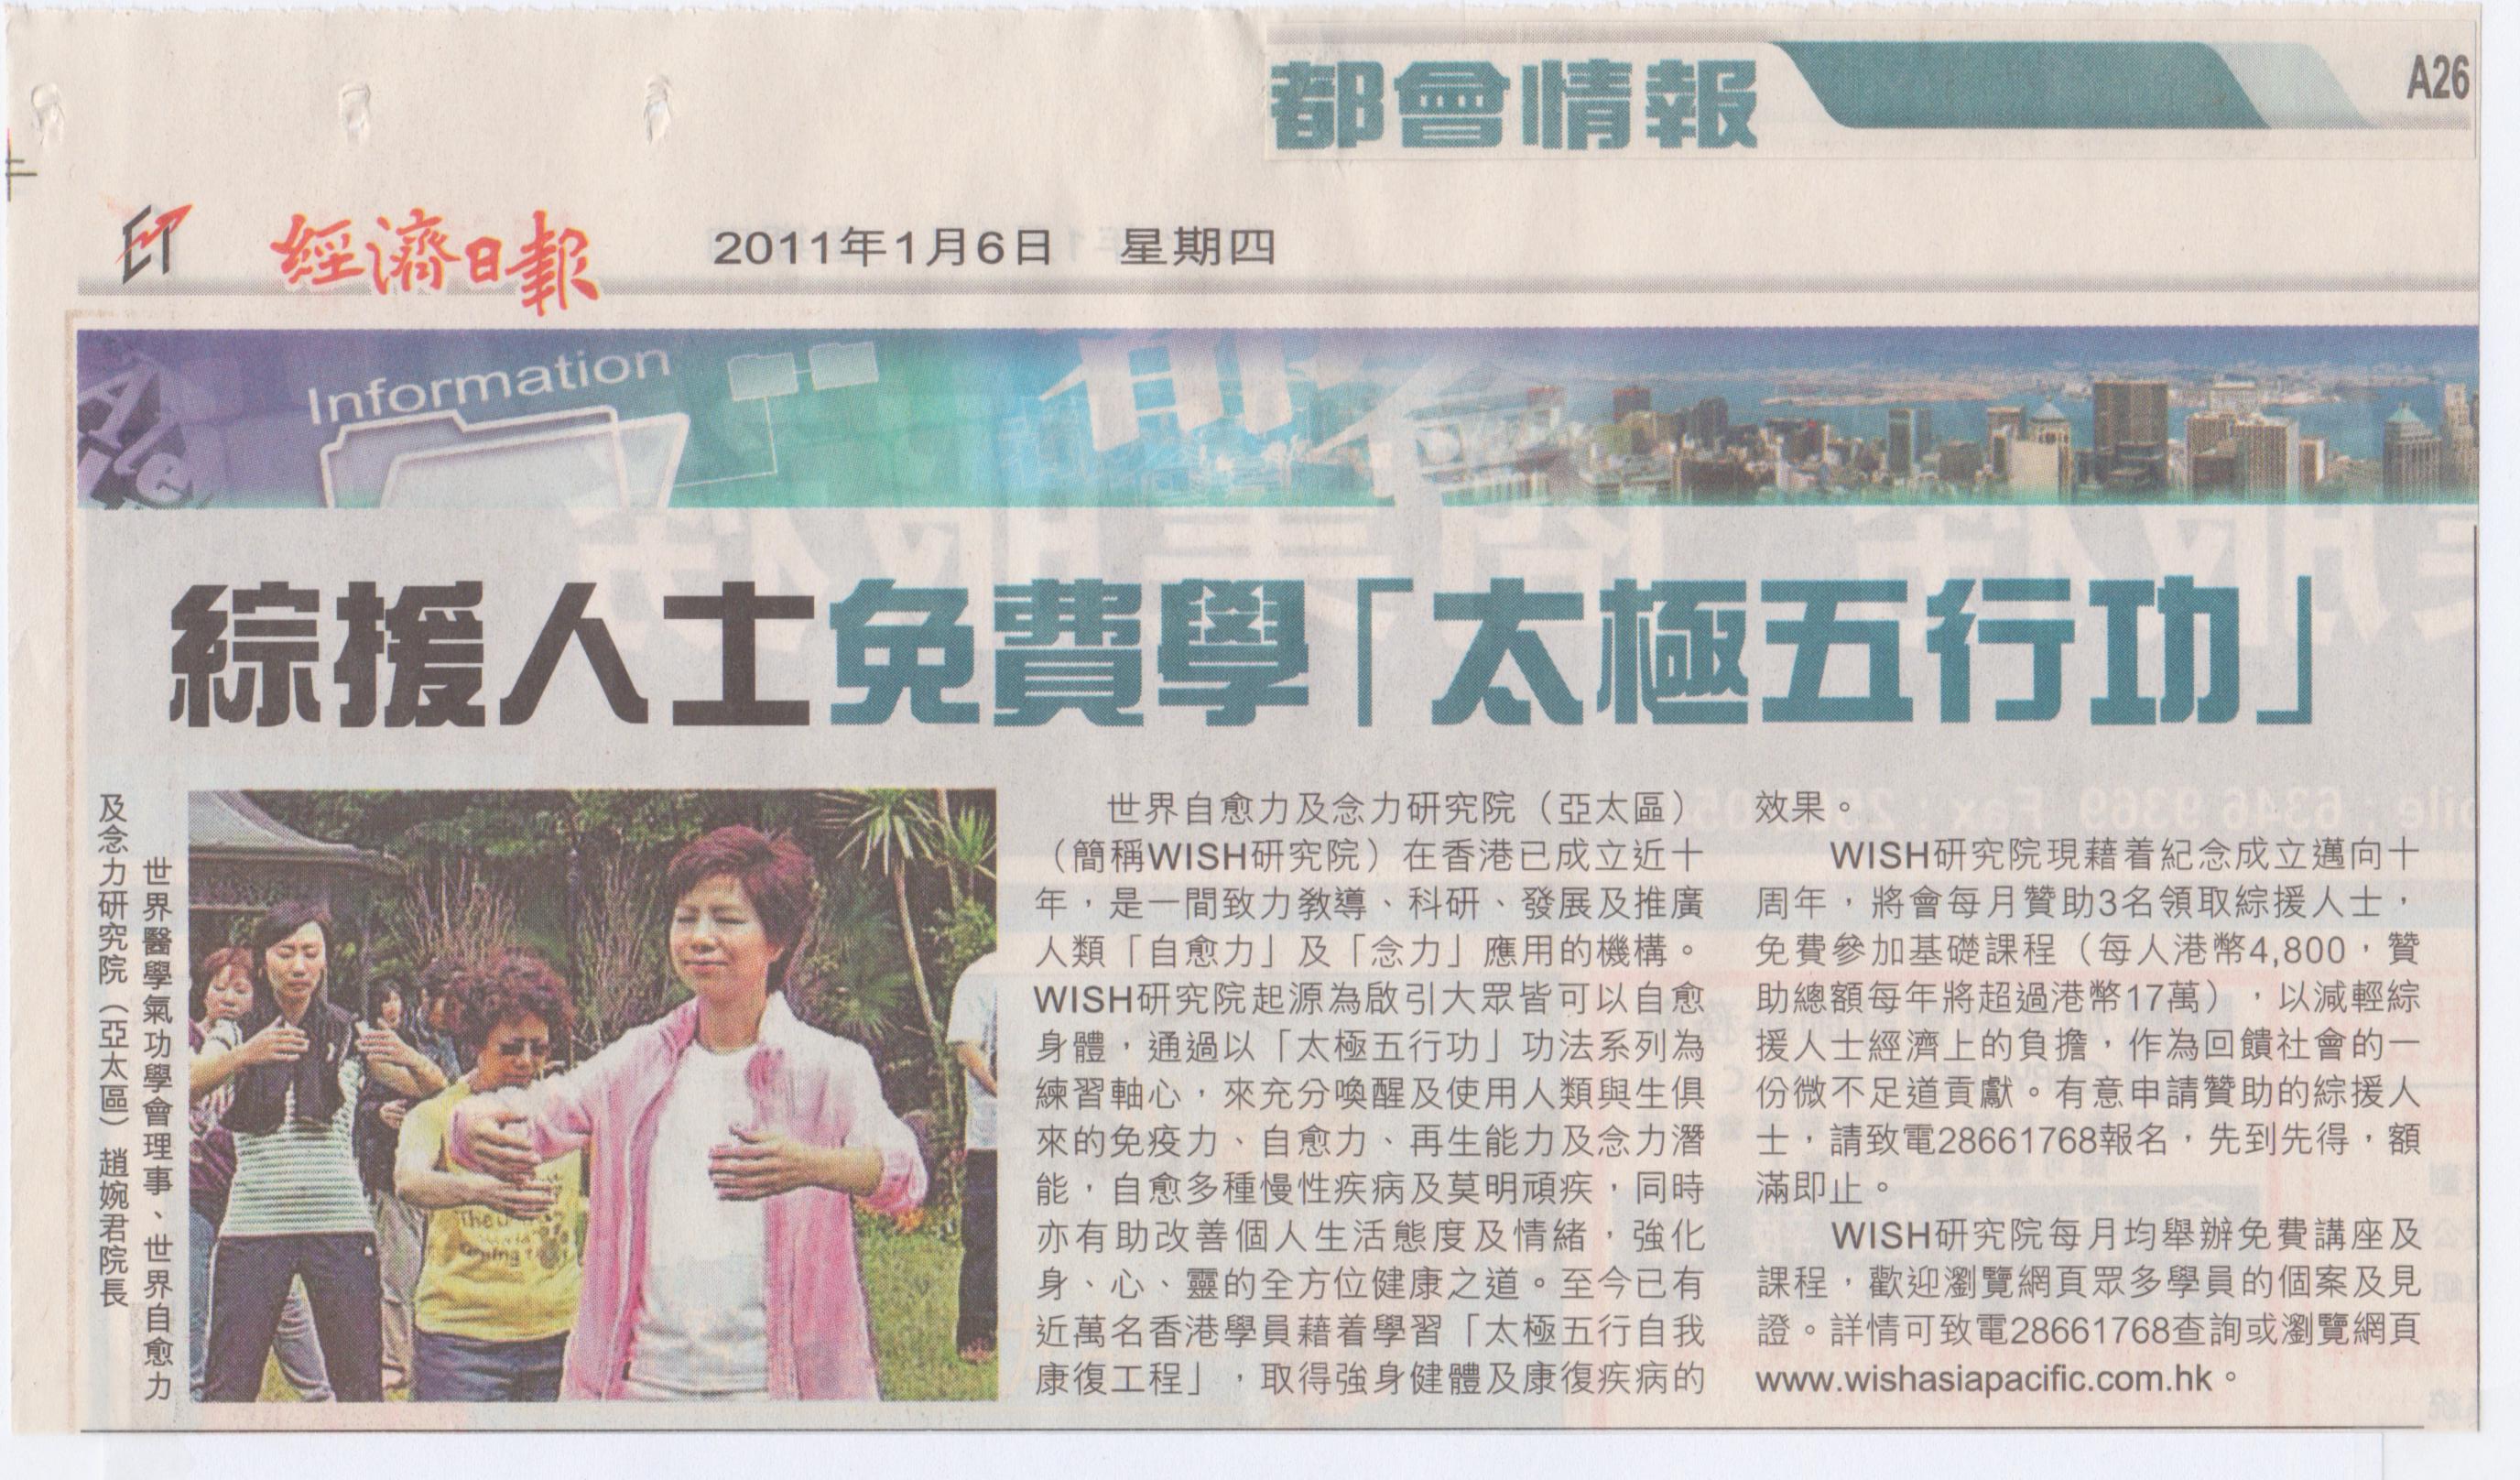 香港經濟日報︰2011年1月6日 (綜援人士免費學「太極五行 功」)